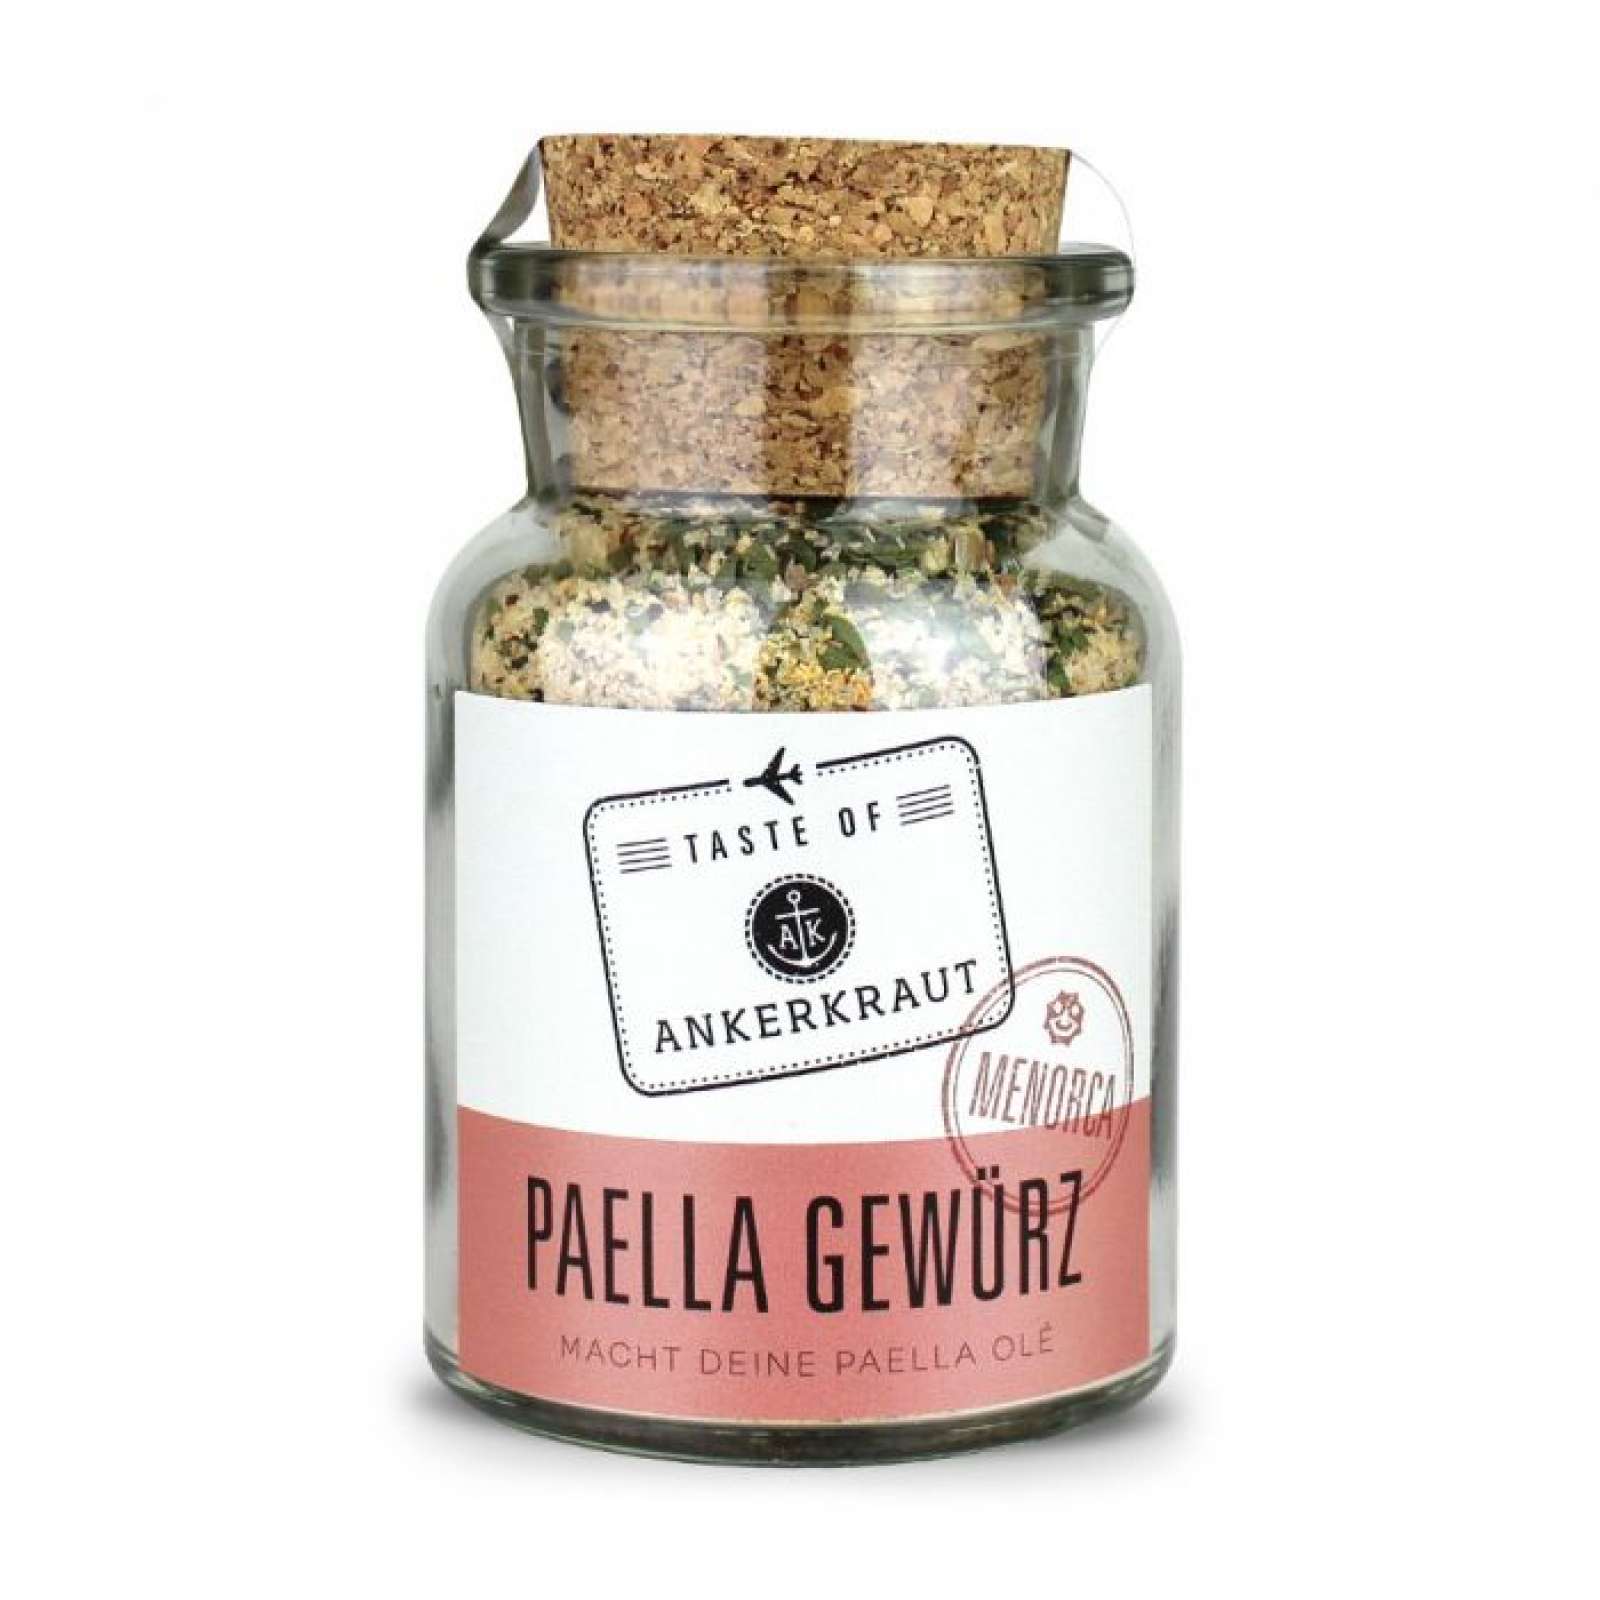 Ankerkraut Paella Gewürz (Menorca) Gewürzmischung für Paella im Korkenglas 145 g